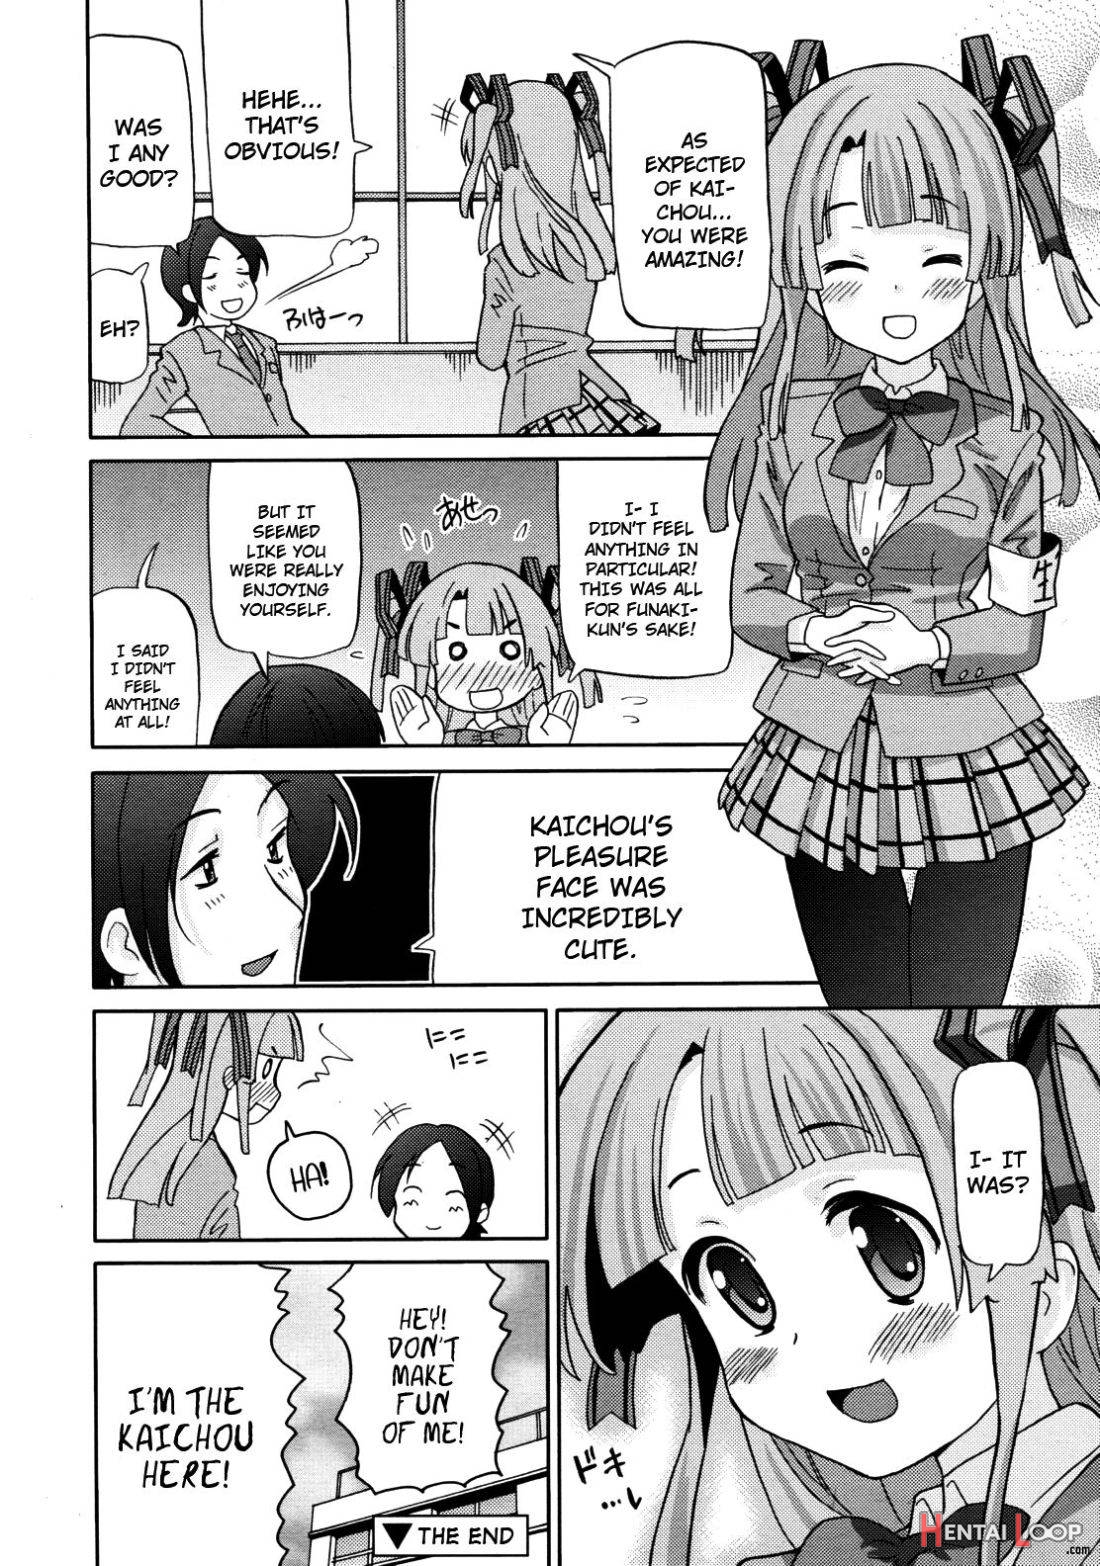 Watashi, Kaichou da yo! page 18